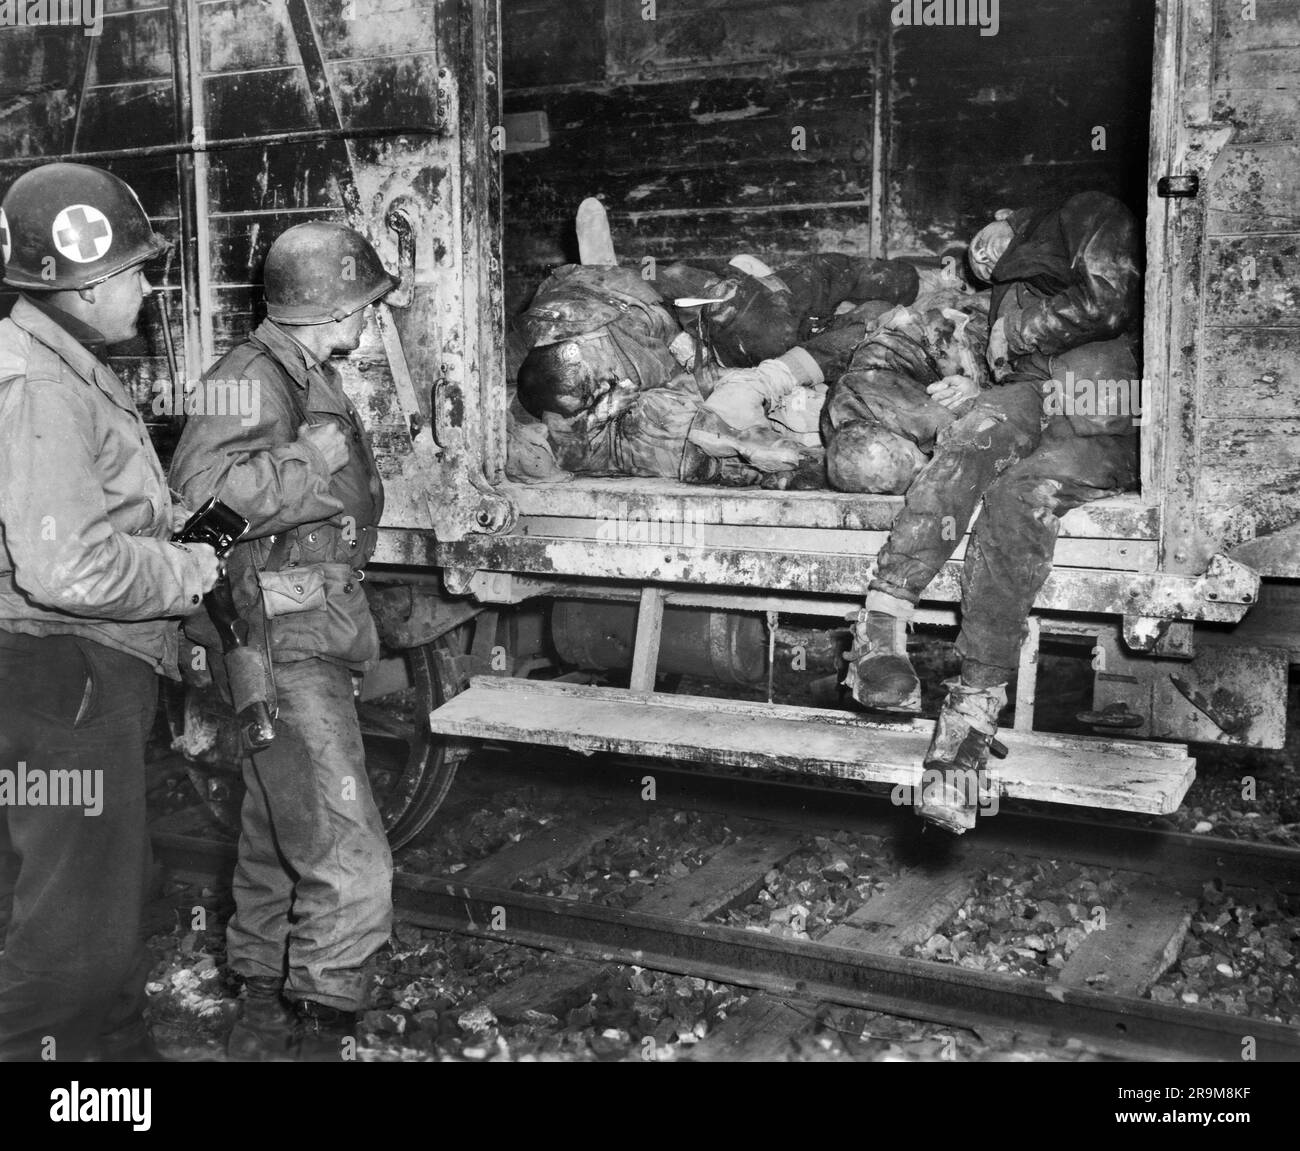 Zwei US-Soldaten beobachten tote Gefangene im Eisenbahnzug im unidentifizierten Konzentrationslager, Deutschland, USA Army Signal Corps, 1945. April Stockfoto